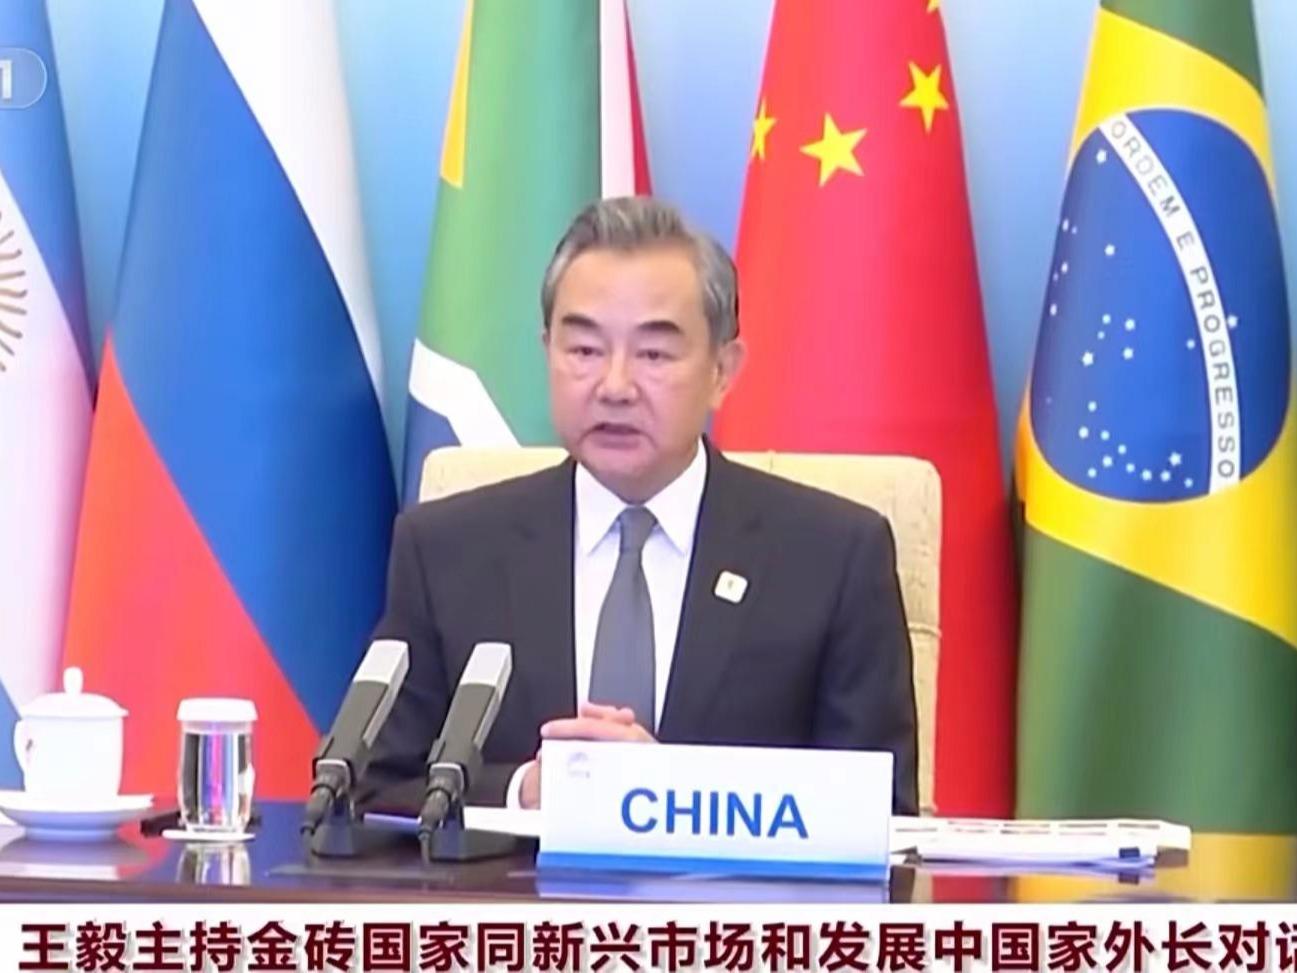 China Junjung Multilateralisme dan Sama Menang dalam Kerjasama 'BRICS Plus'